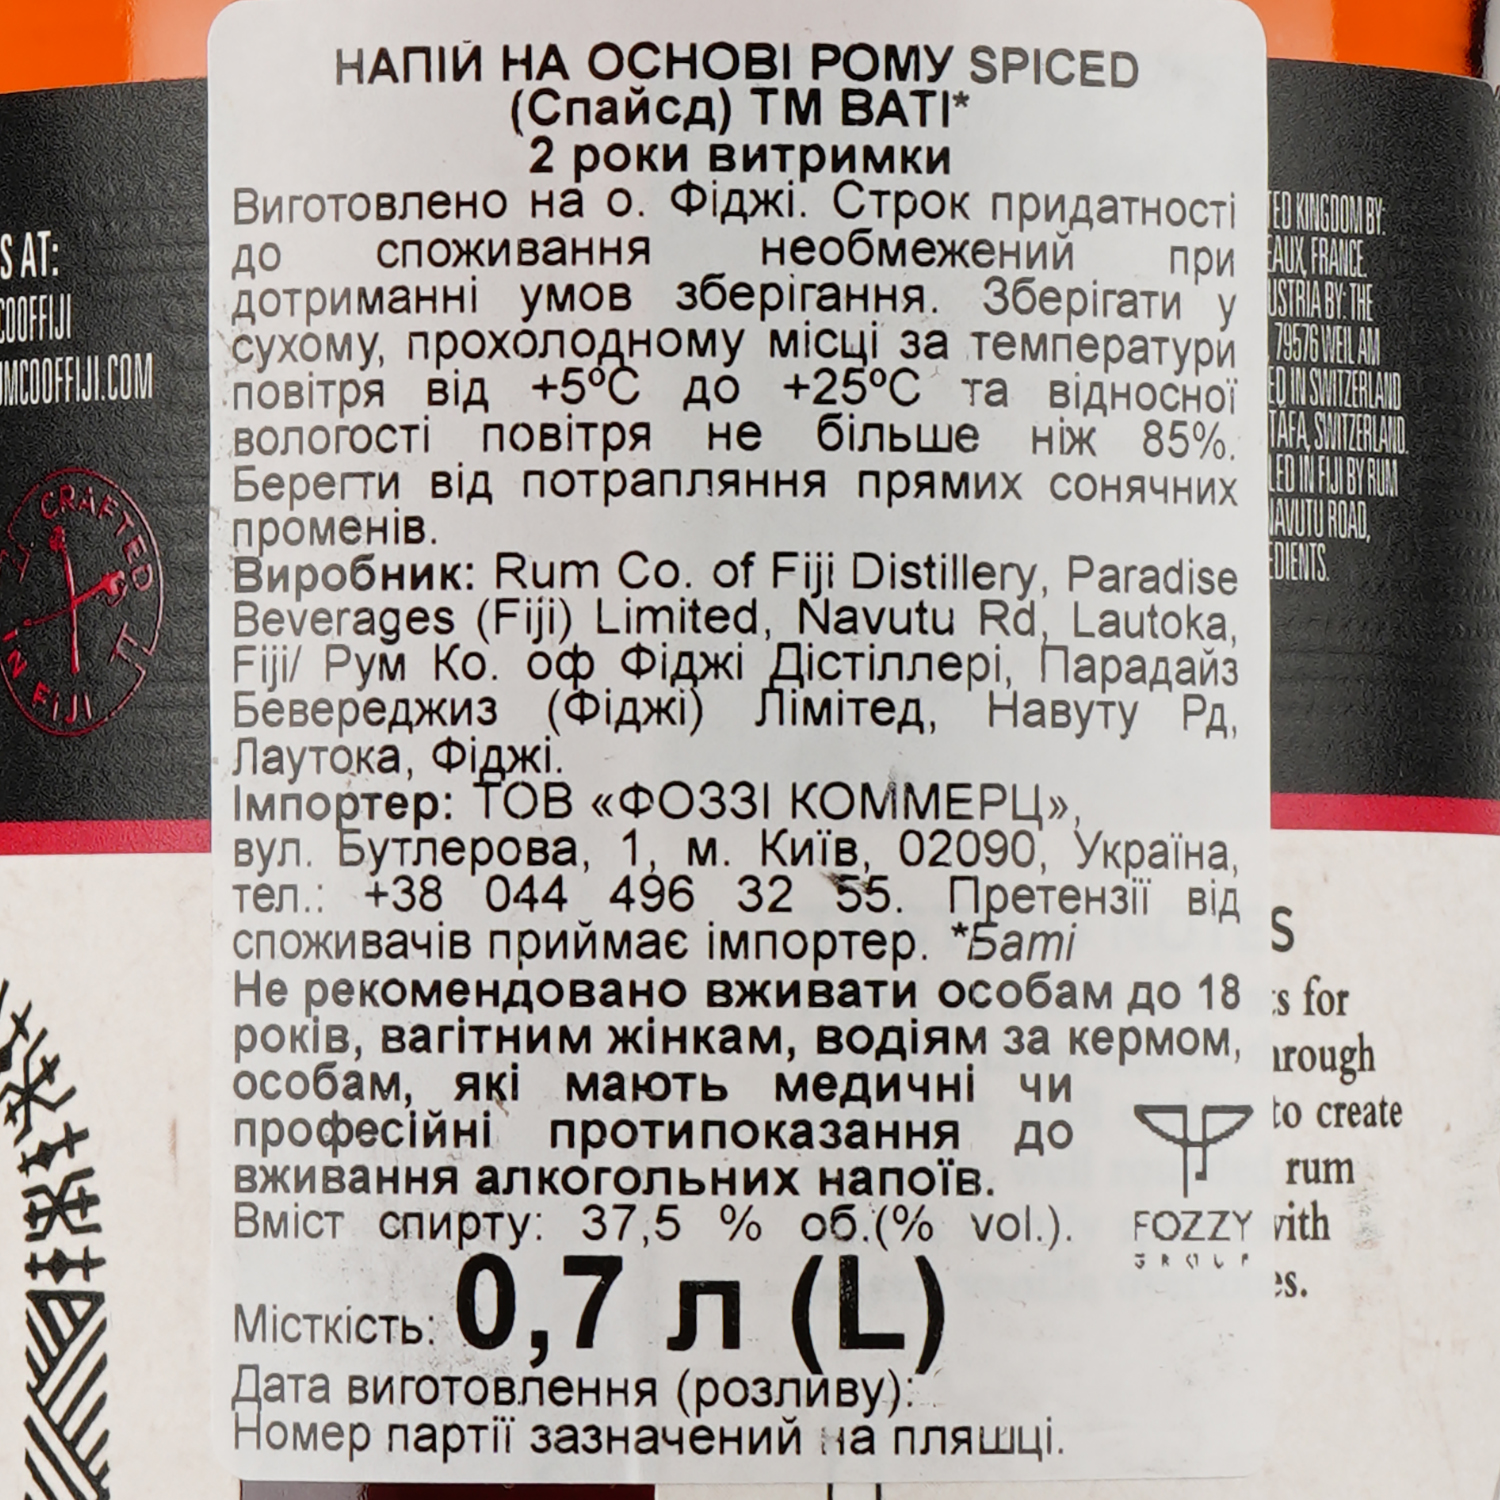 Ромовый напиток Bati Spiced 2yo, 37,5%, 0,7 л - фото 4